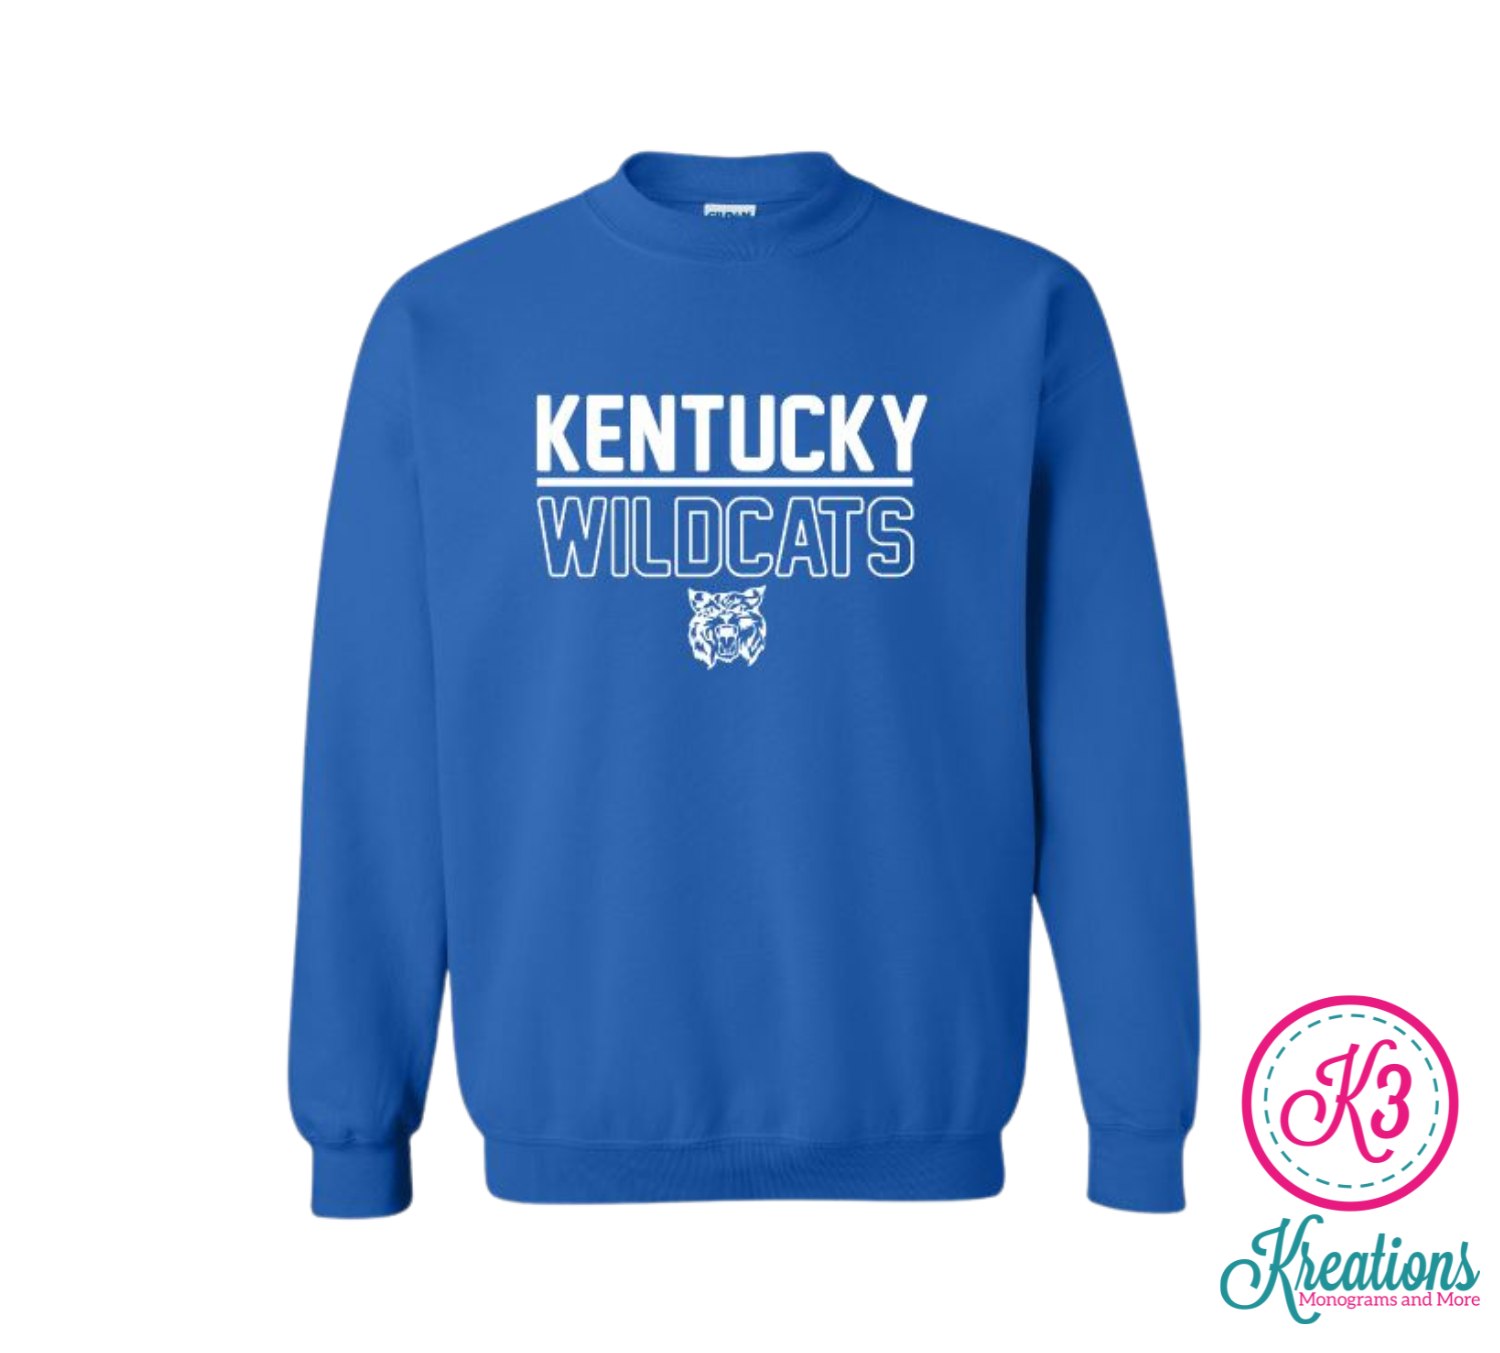 Adult Kentucky Wildcats Crewneck Sweatshirt